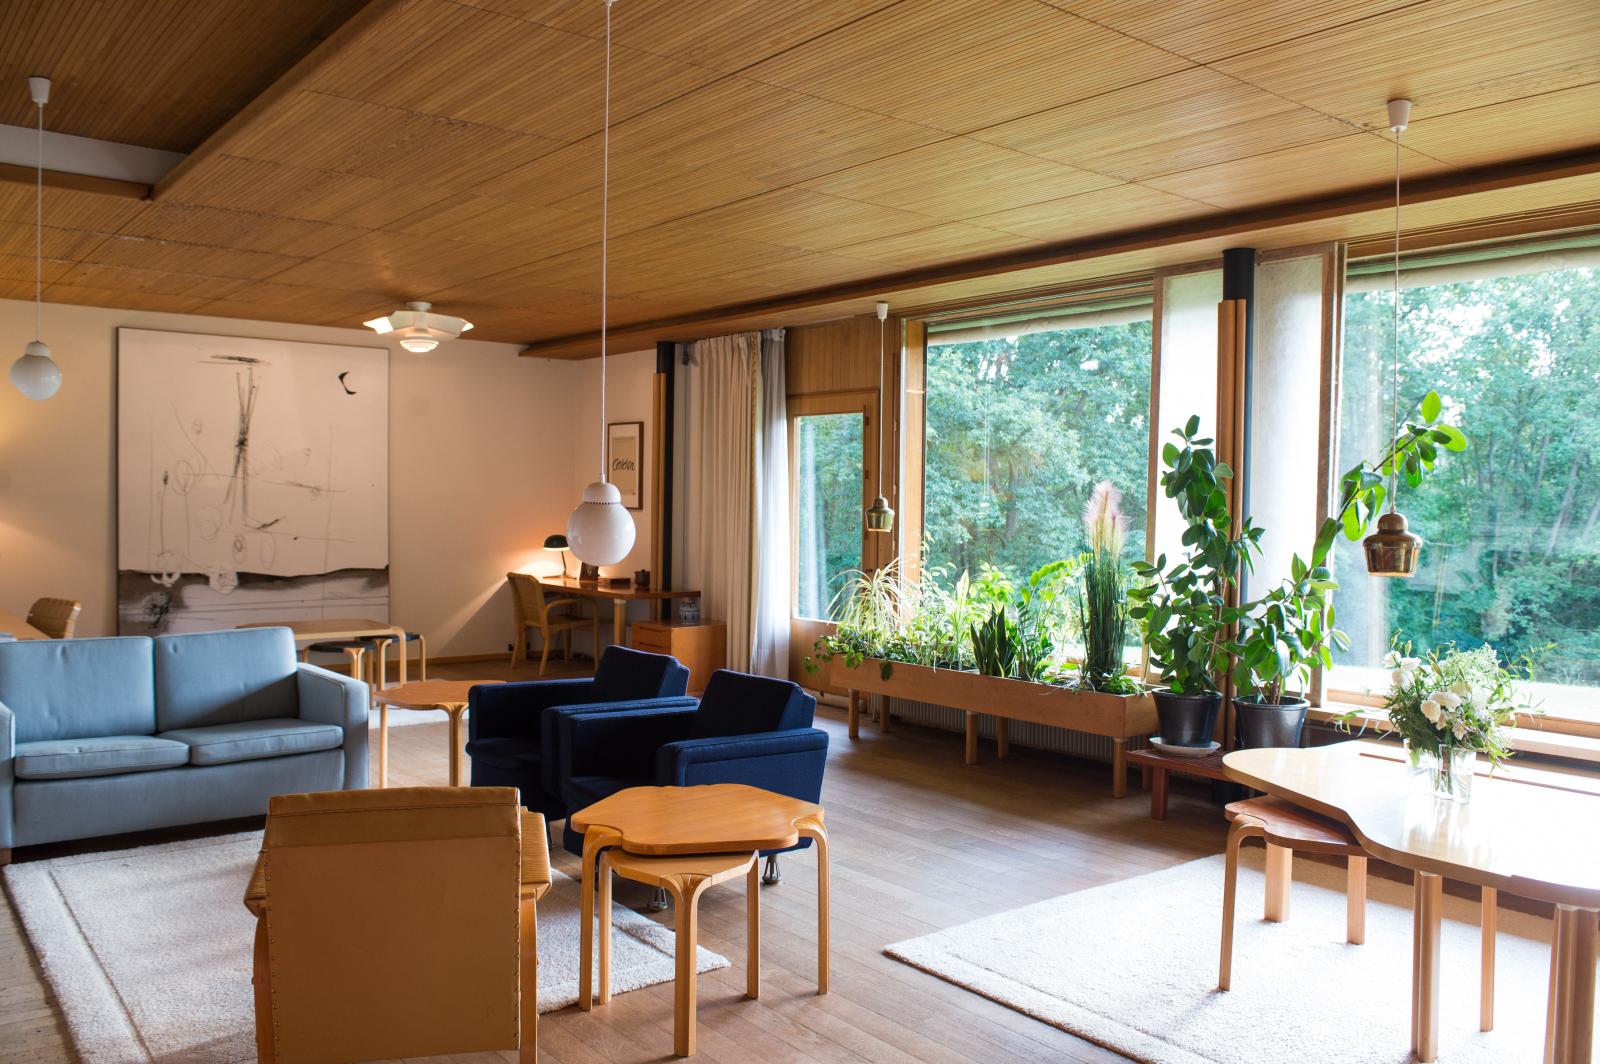 Vue de la salle de séjour. Comme toujours chez Alvar Aalto, le choix des matériaux et du mobilier a été motivé par la volonté d’accentuer la chaleur d